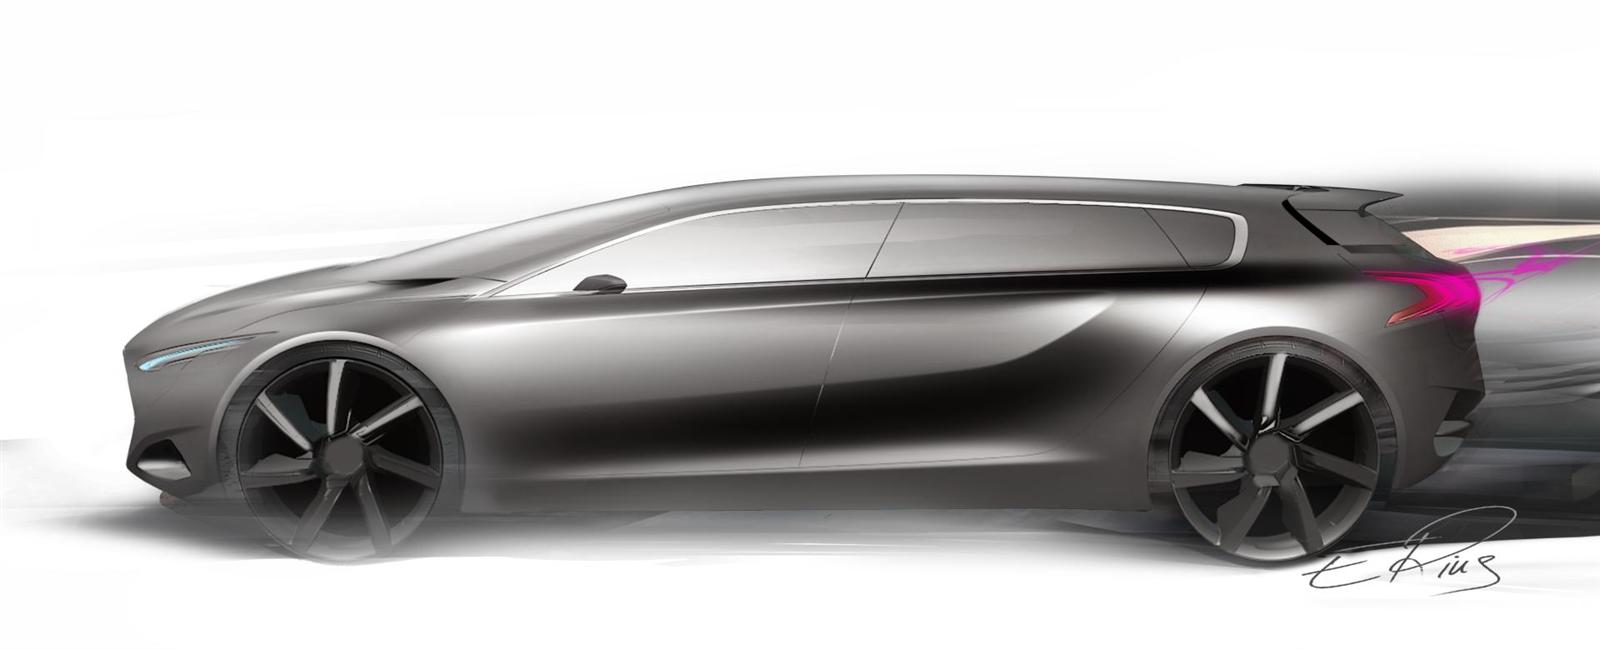 2012 Peugeot HX1 Concept